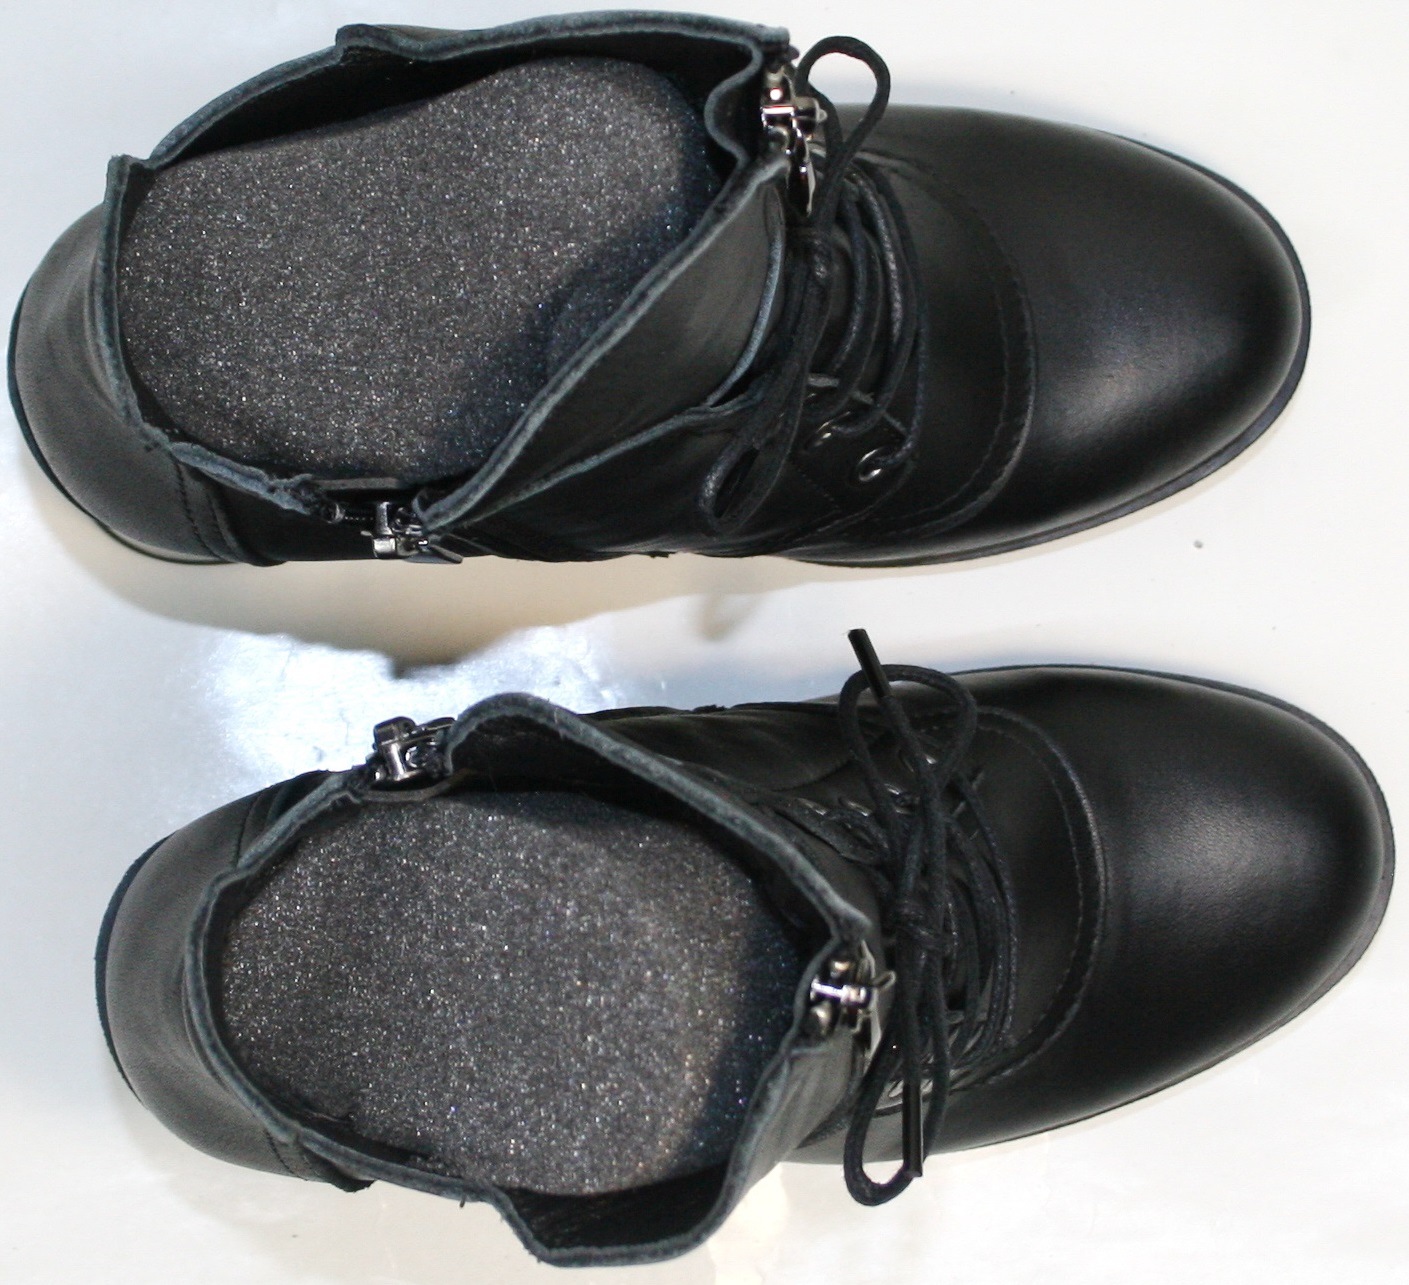 Изготовены из натуральной кожи черного цвета. Подкладка из шерсти сохранит микроклимат внутри обуви, а пенолатексная стелька снизит ударные нагрузки при ходьбе.